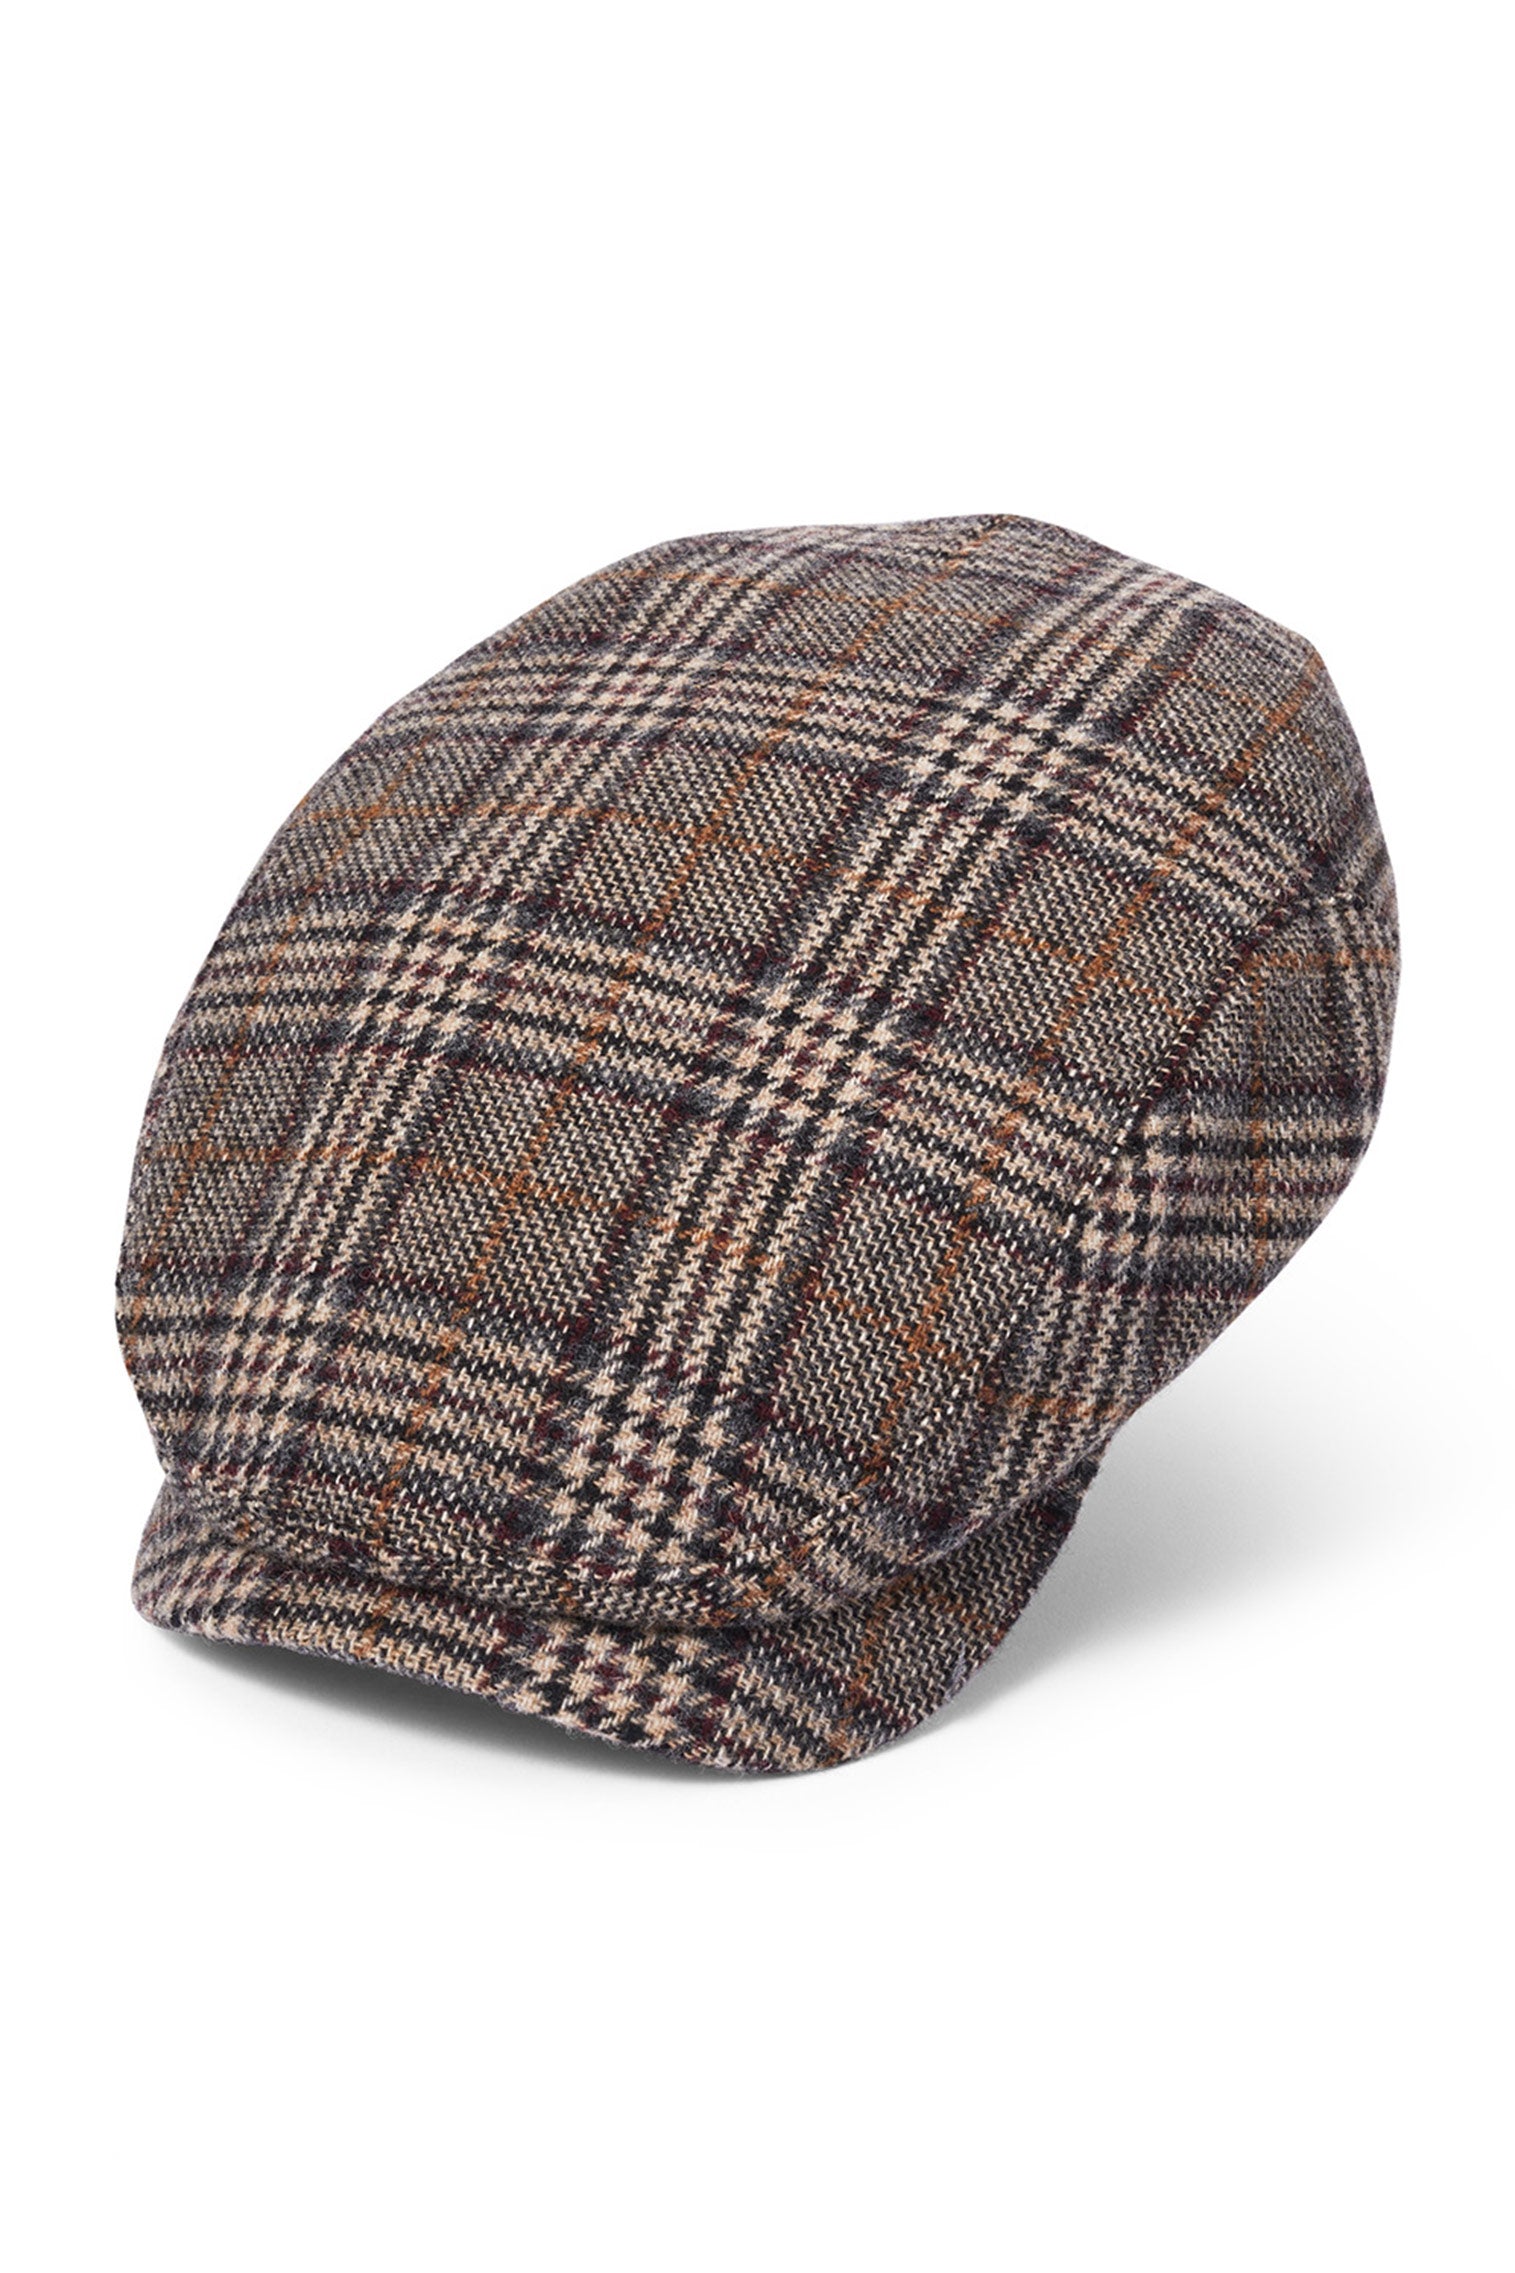 Lynton Grey Flat Cap - Men's Hats - Lock & Co. Hatters London UK